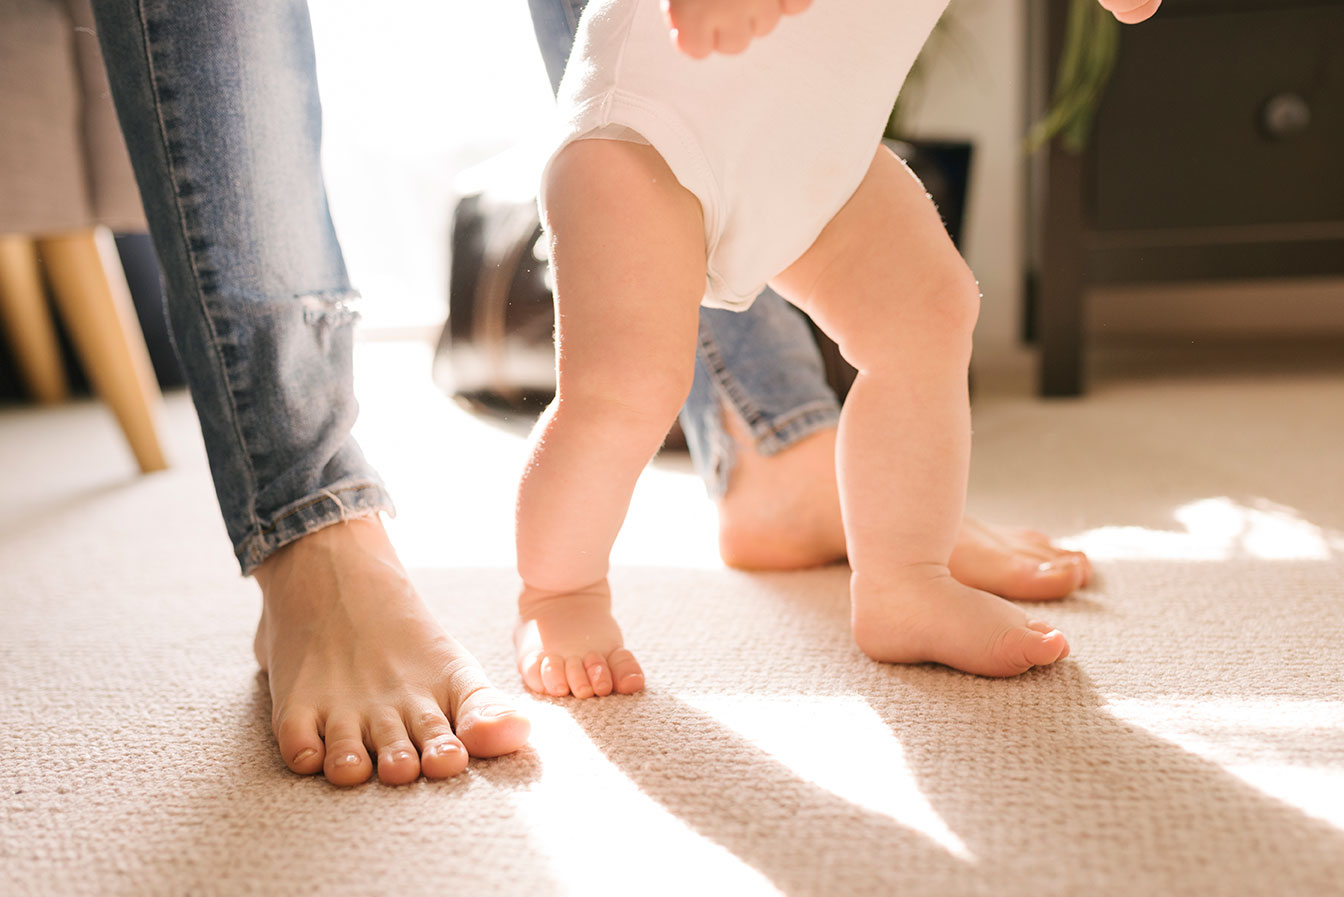 Marcher pieds nus : bon ou mauvais pour notre santé ? - KINESPORT -  DUDELANGE